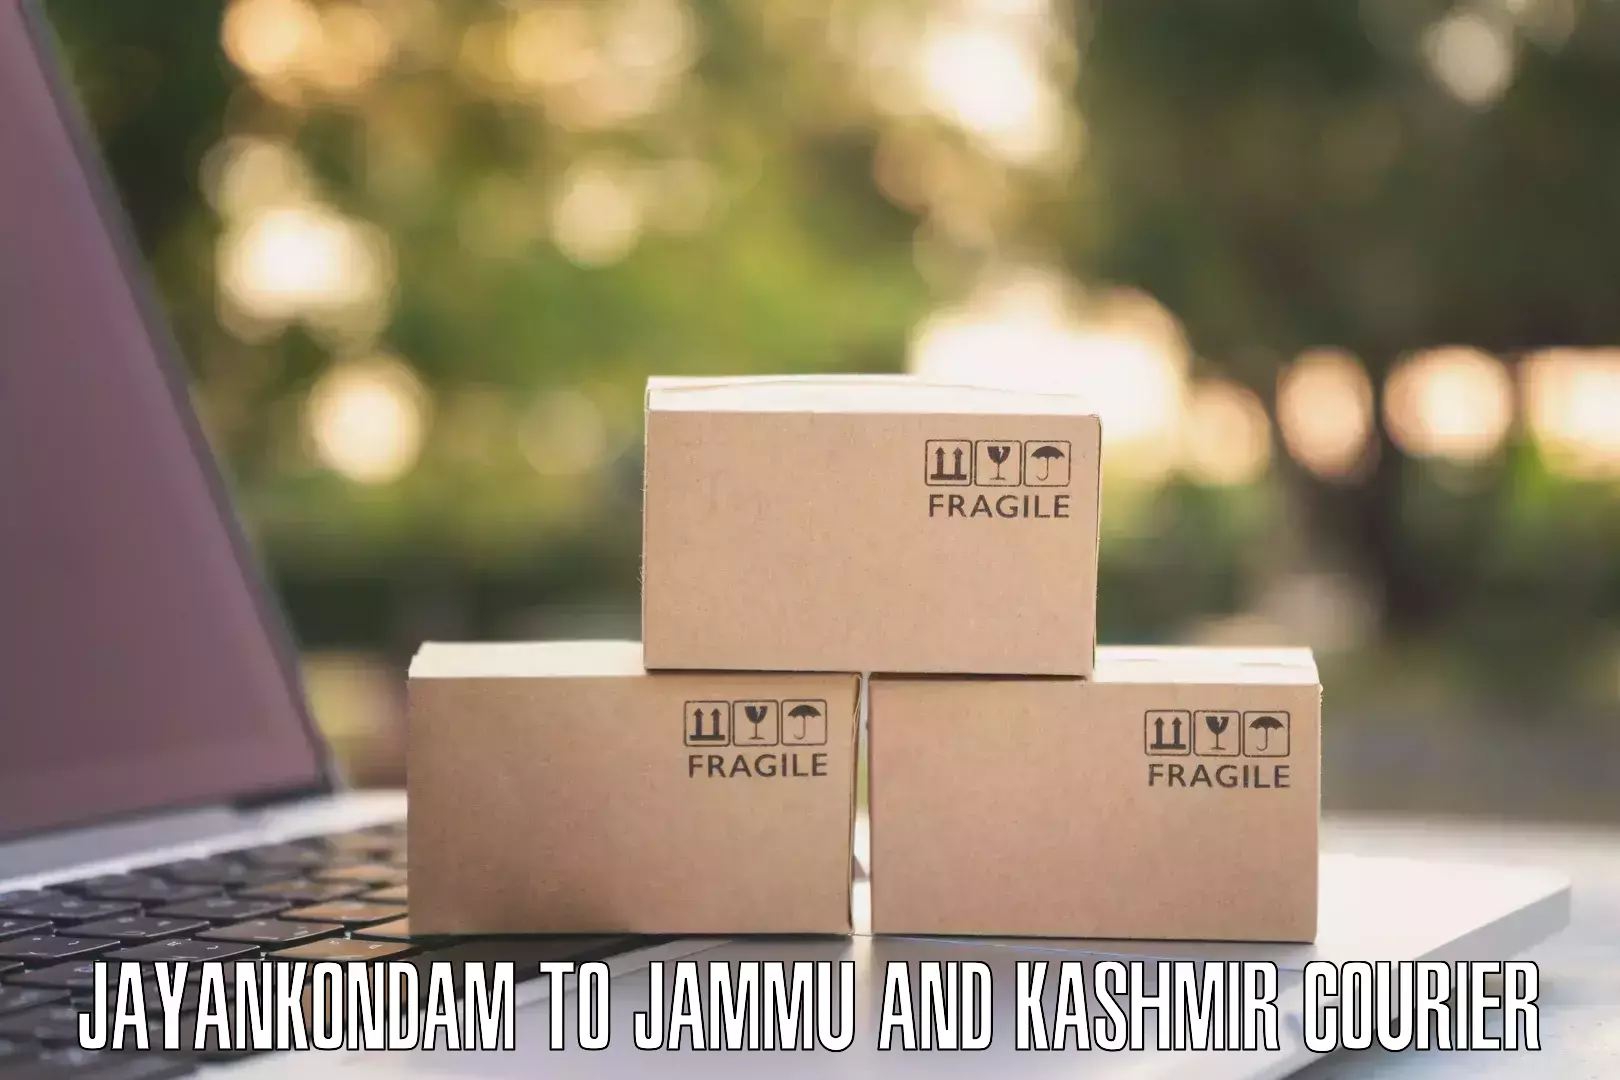 Affordable parcel service Jayankondam to University of Jammu